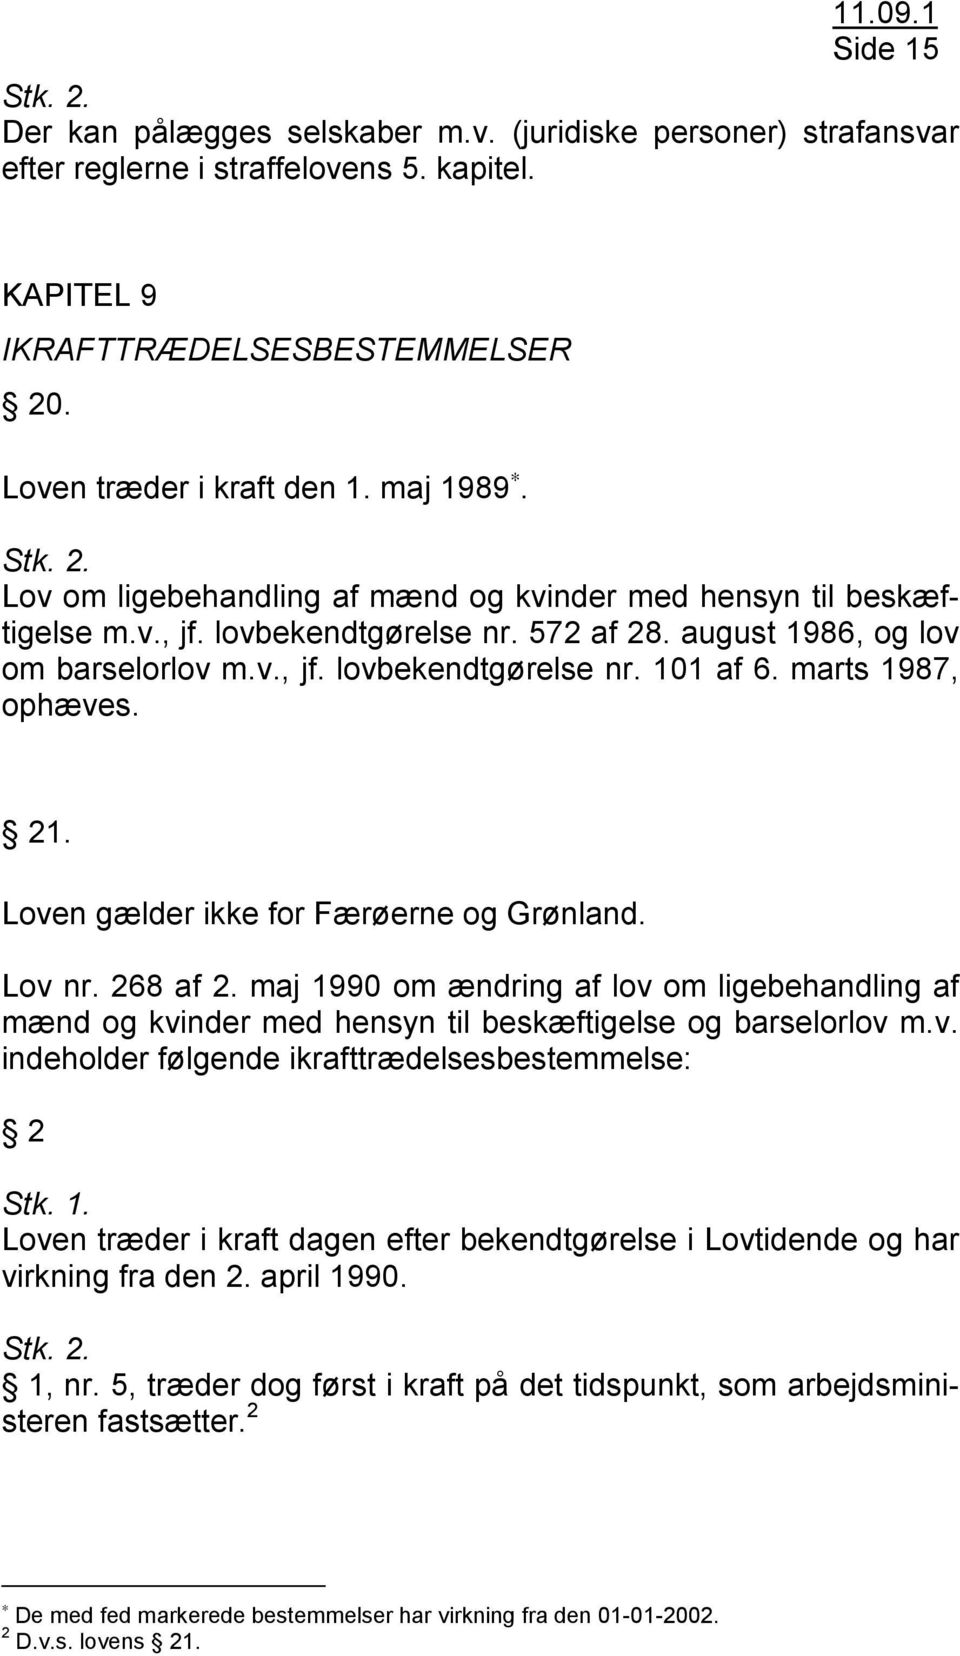 marts 1987, ophæves. 21. Loven gælder ikke for Færøerne og Grønland. Lov nr. 268 af 2. maj 1990 om ændring af lov om ligebehandling af mænd og kvinder med hensyn til beskæftigelse og barselorlov m.v. indeholder følgende ikrafttrædelsesbestemmelse: 2 Stk.